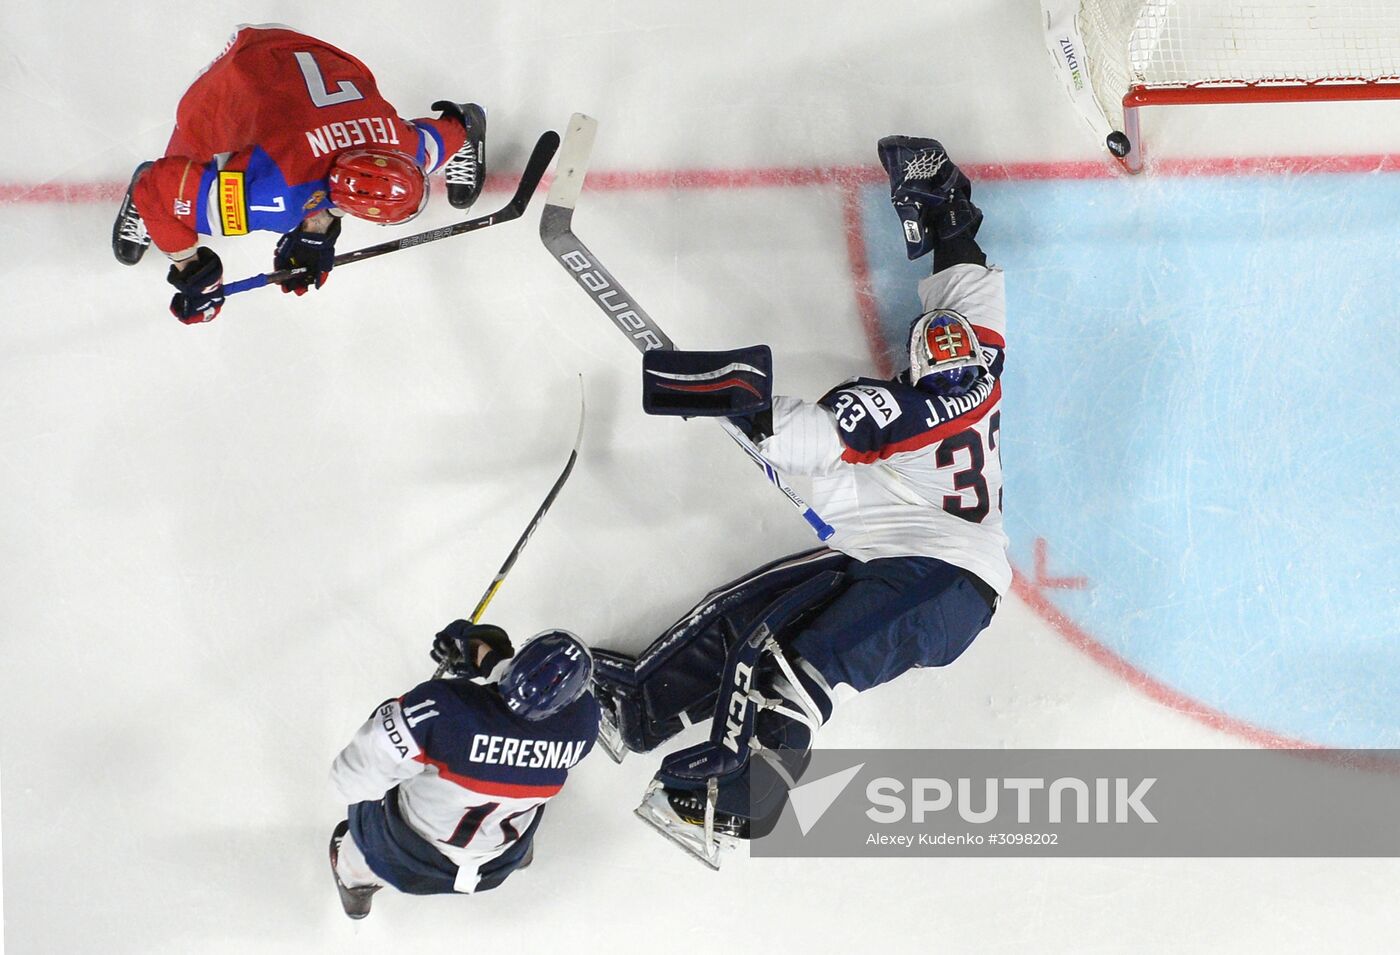 IIHF World Championship 2017. Russia vs. Slovakia